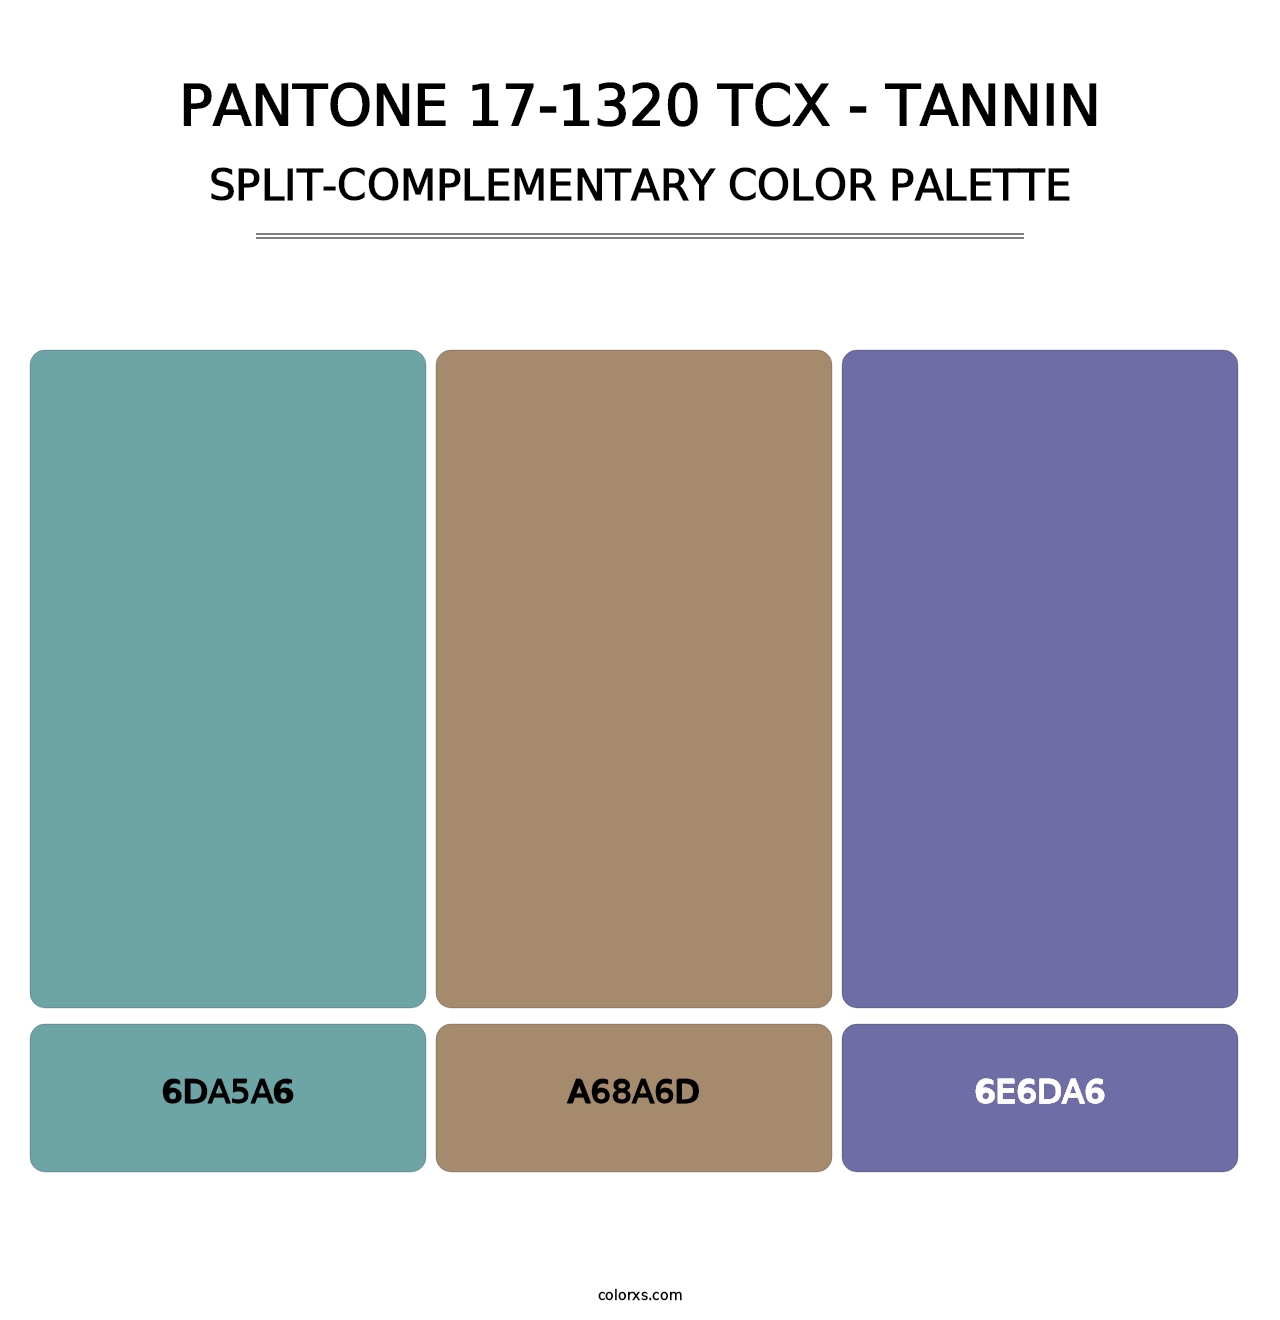 PANTONE 17-1320 TCX - Tannin - Split-Complementary Color Palette